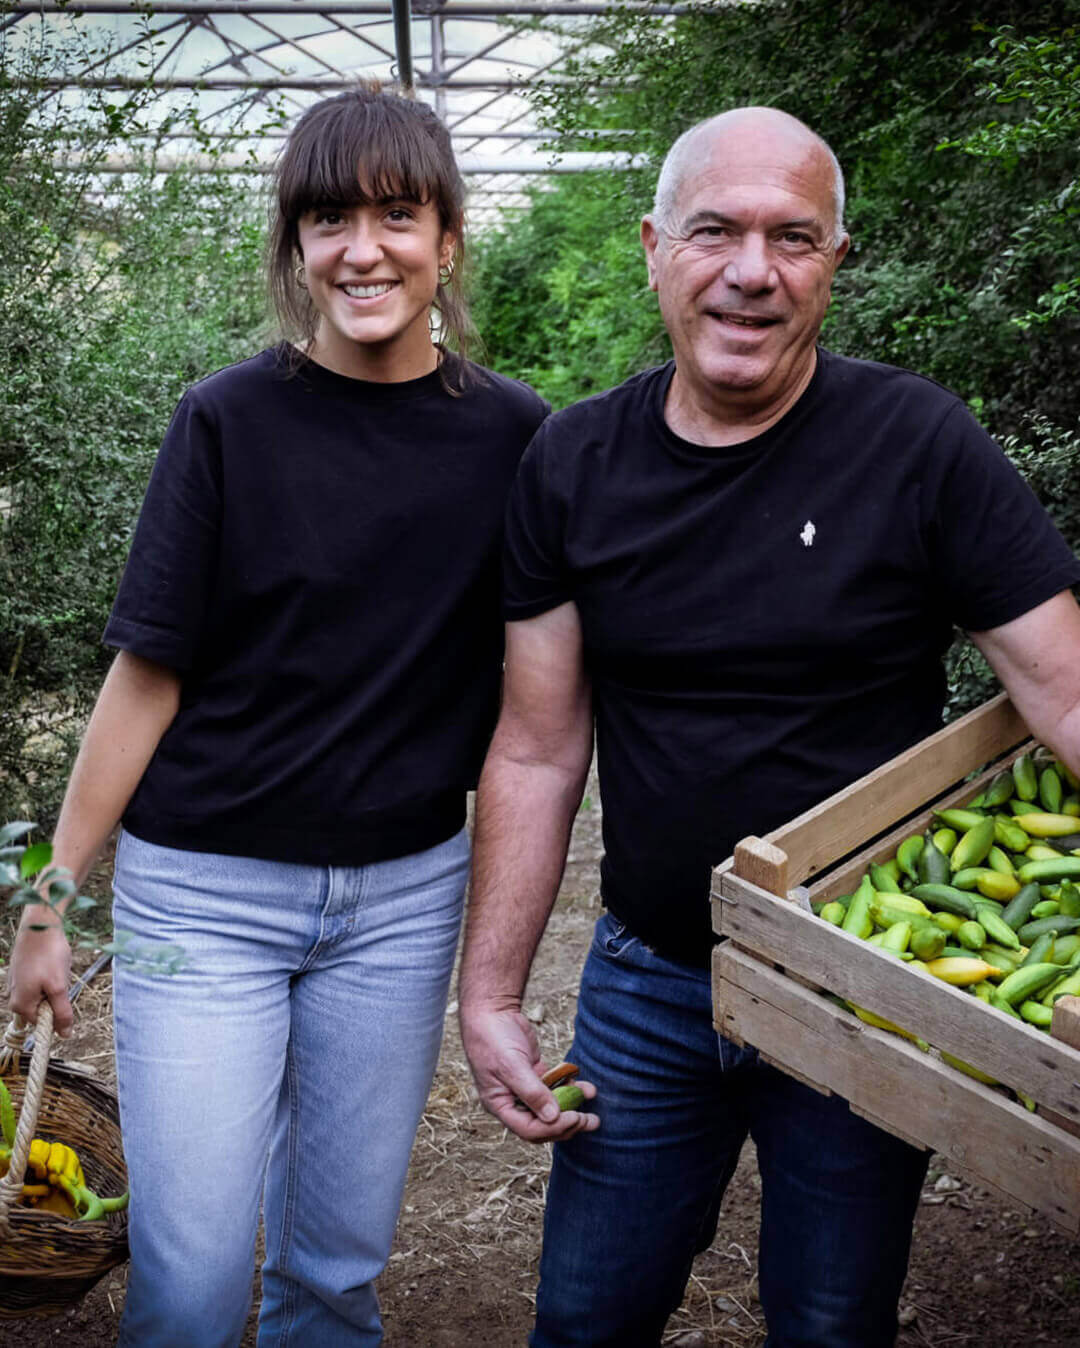 Une histoire de passion - Plantation d'agrumes rares Lemon Story - La Crau France